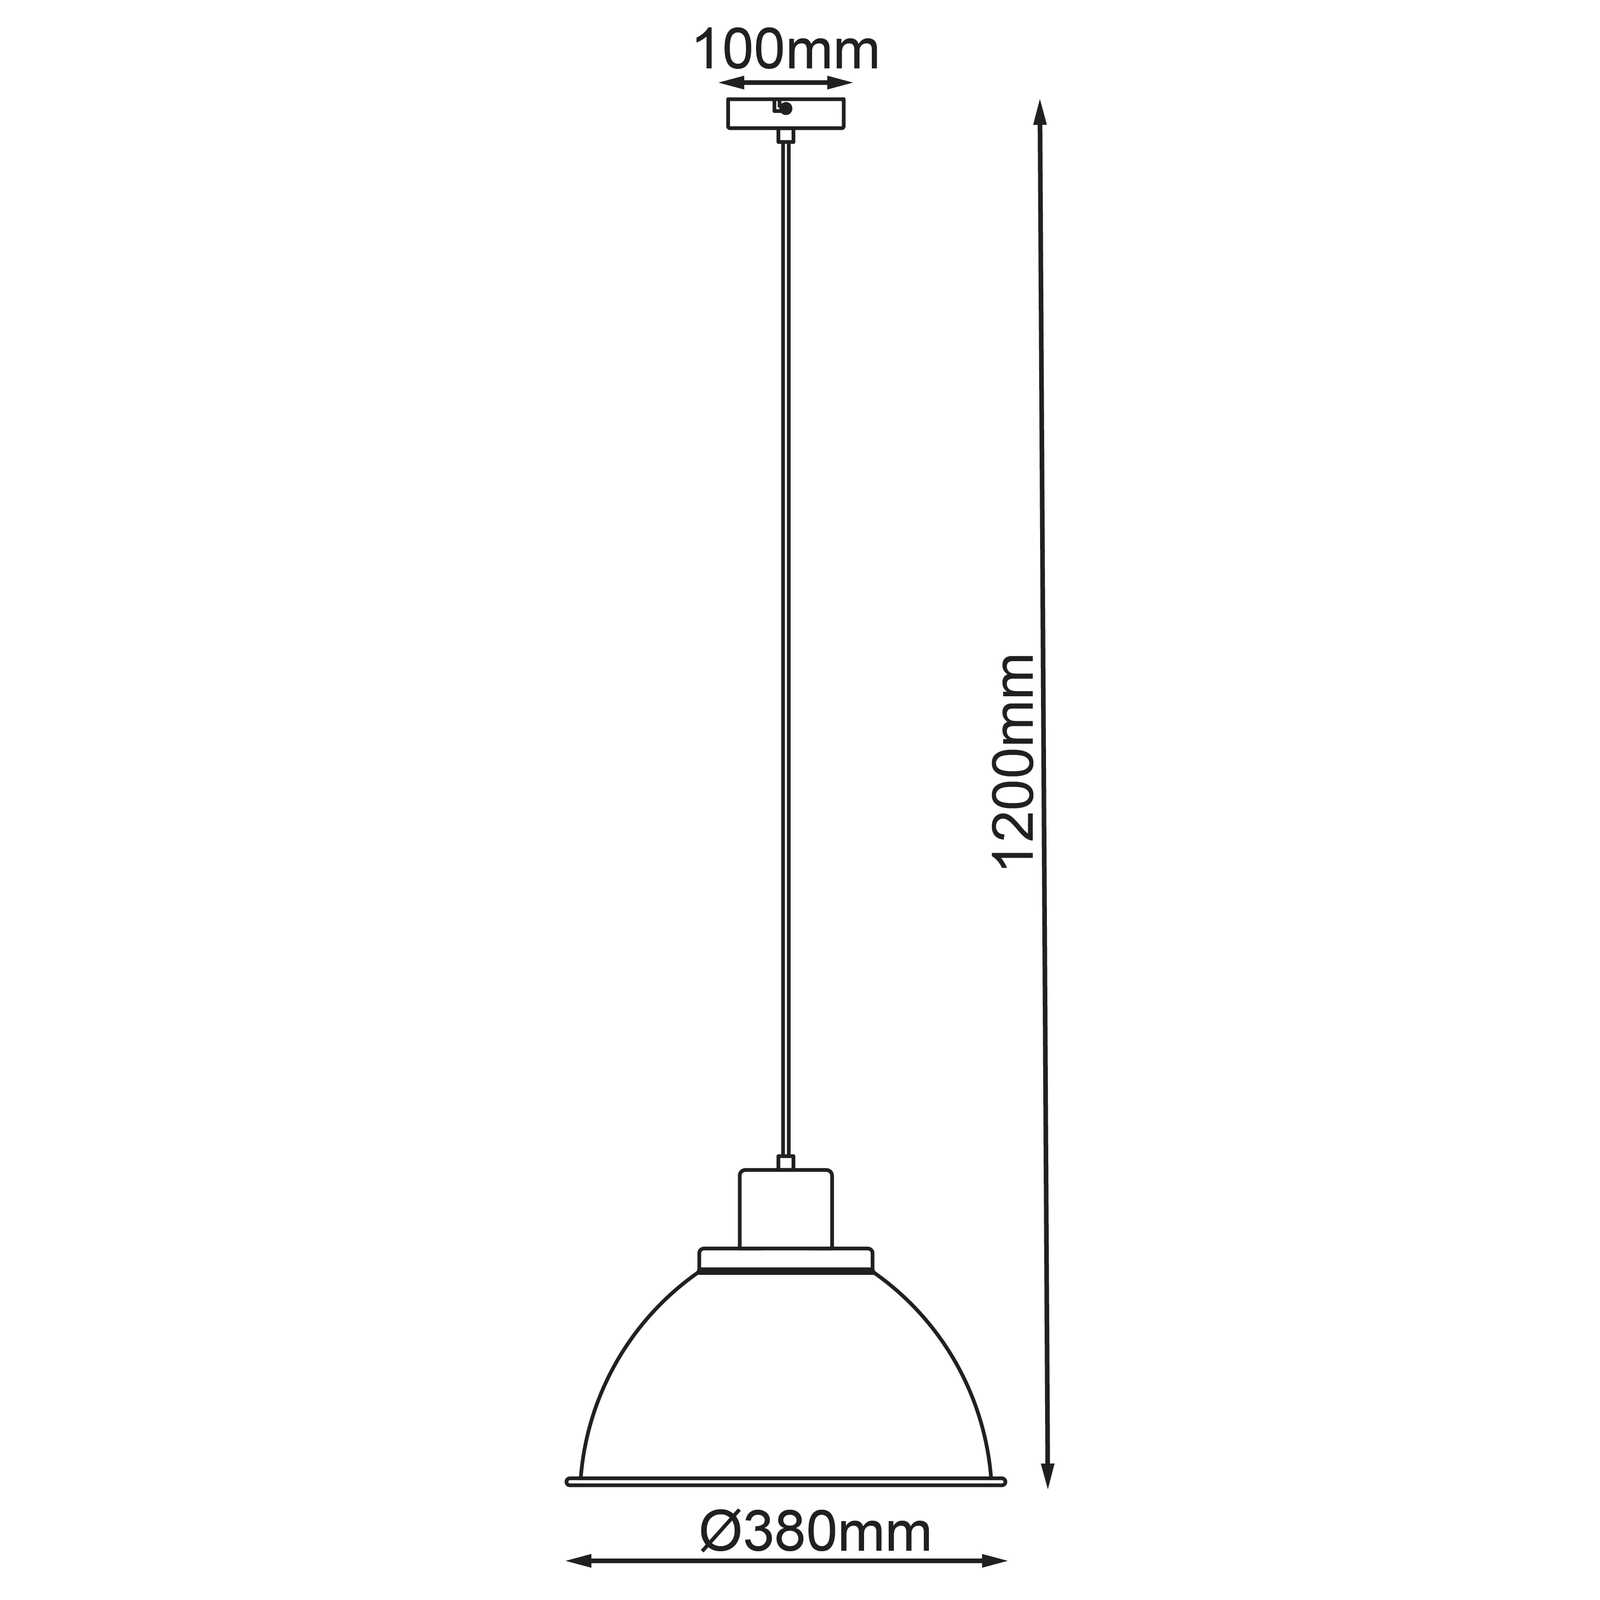             Houten hanglamp - Franziska 10 - Roze
        